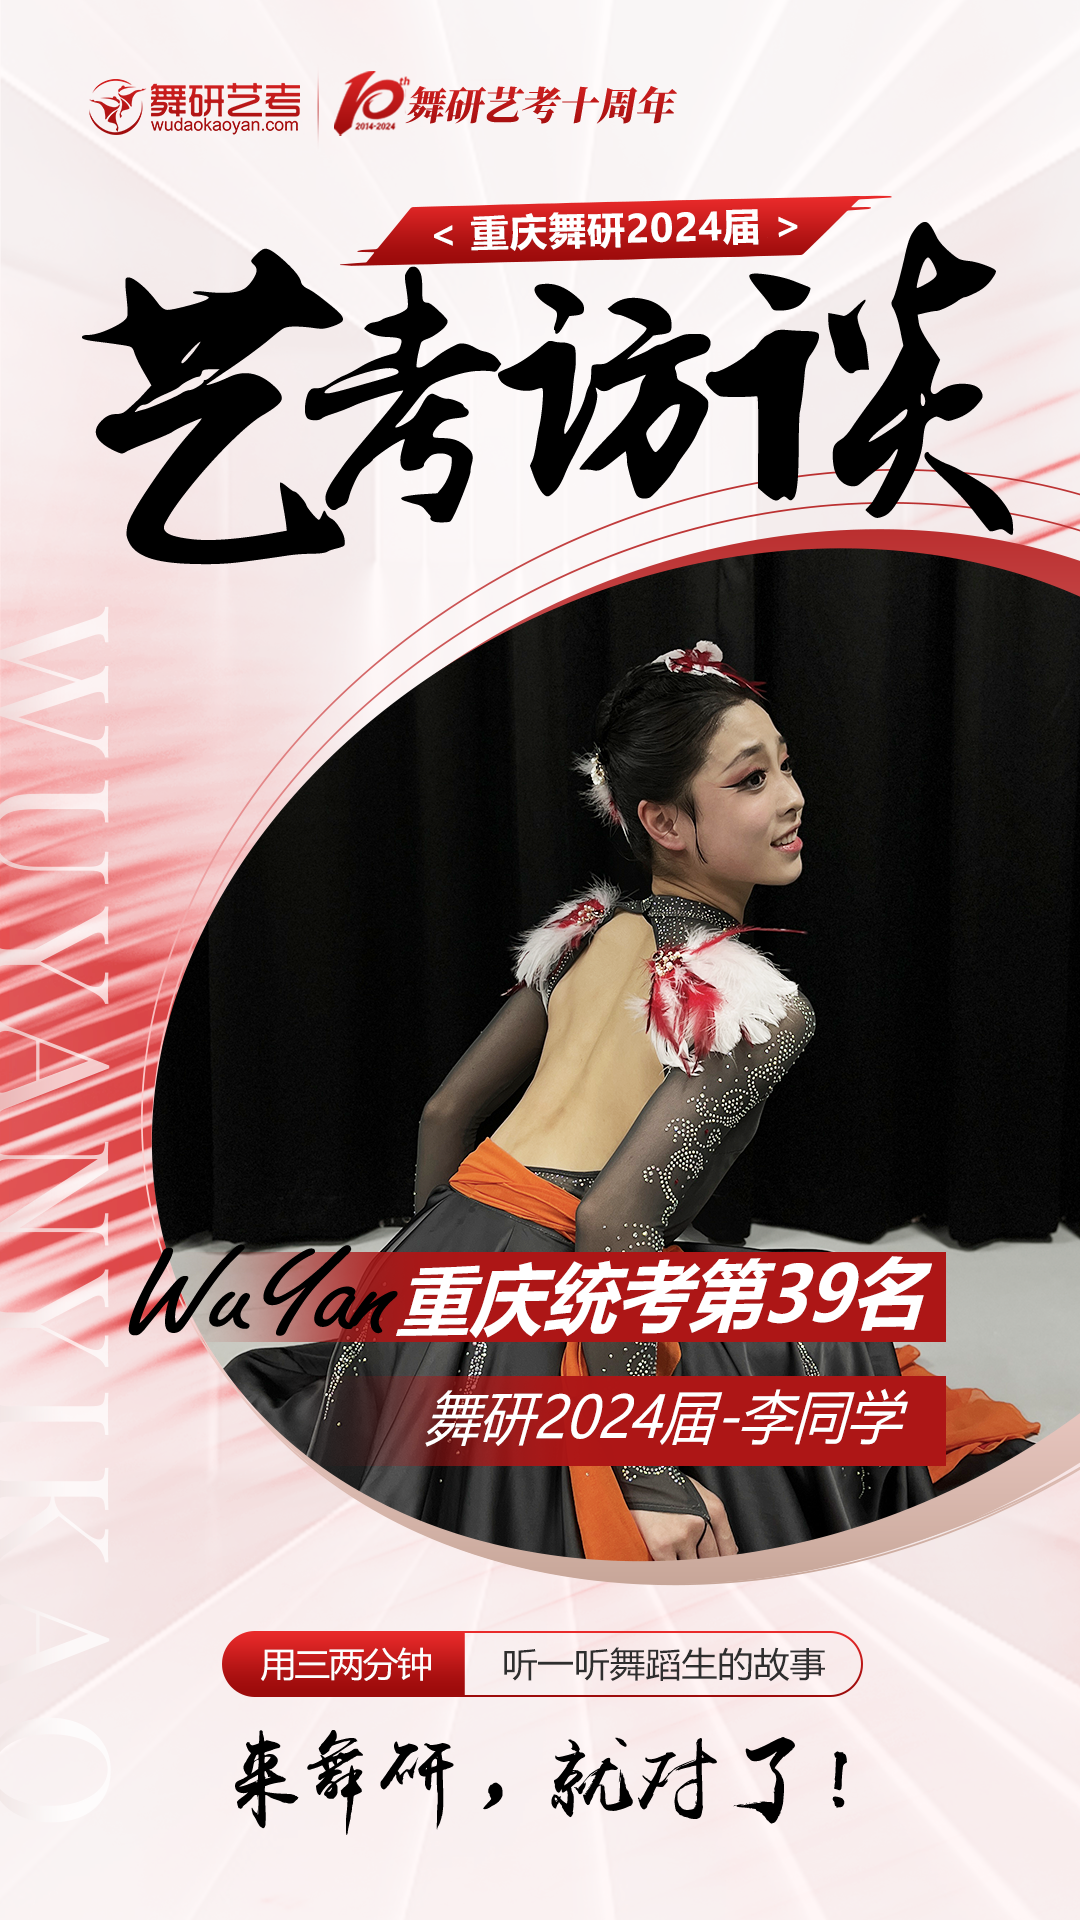 162普高生斩获重庆舞蹈统考第39名！一起来听听她的故事丨24届学员专访